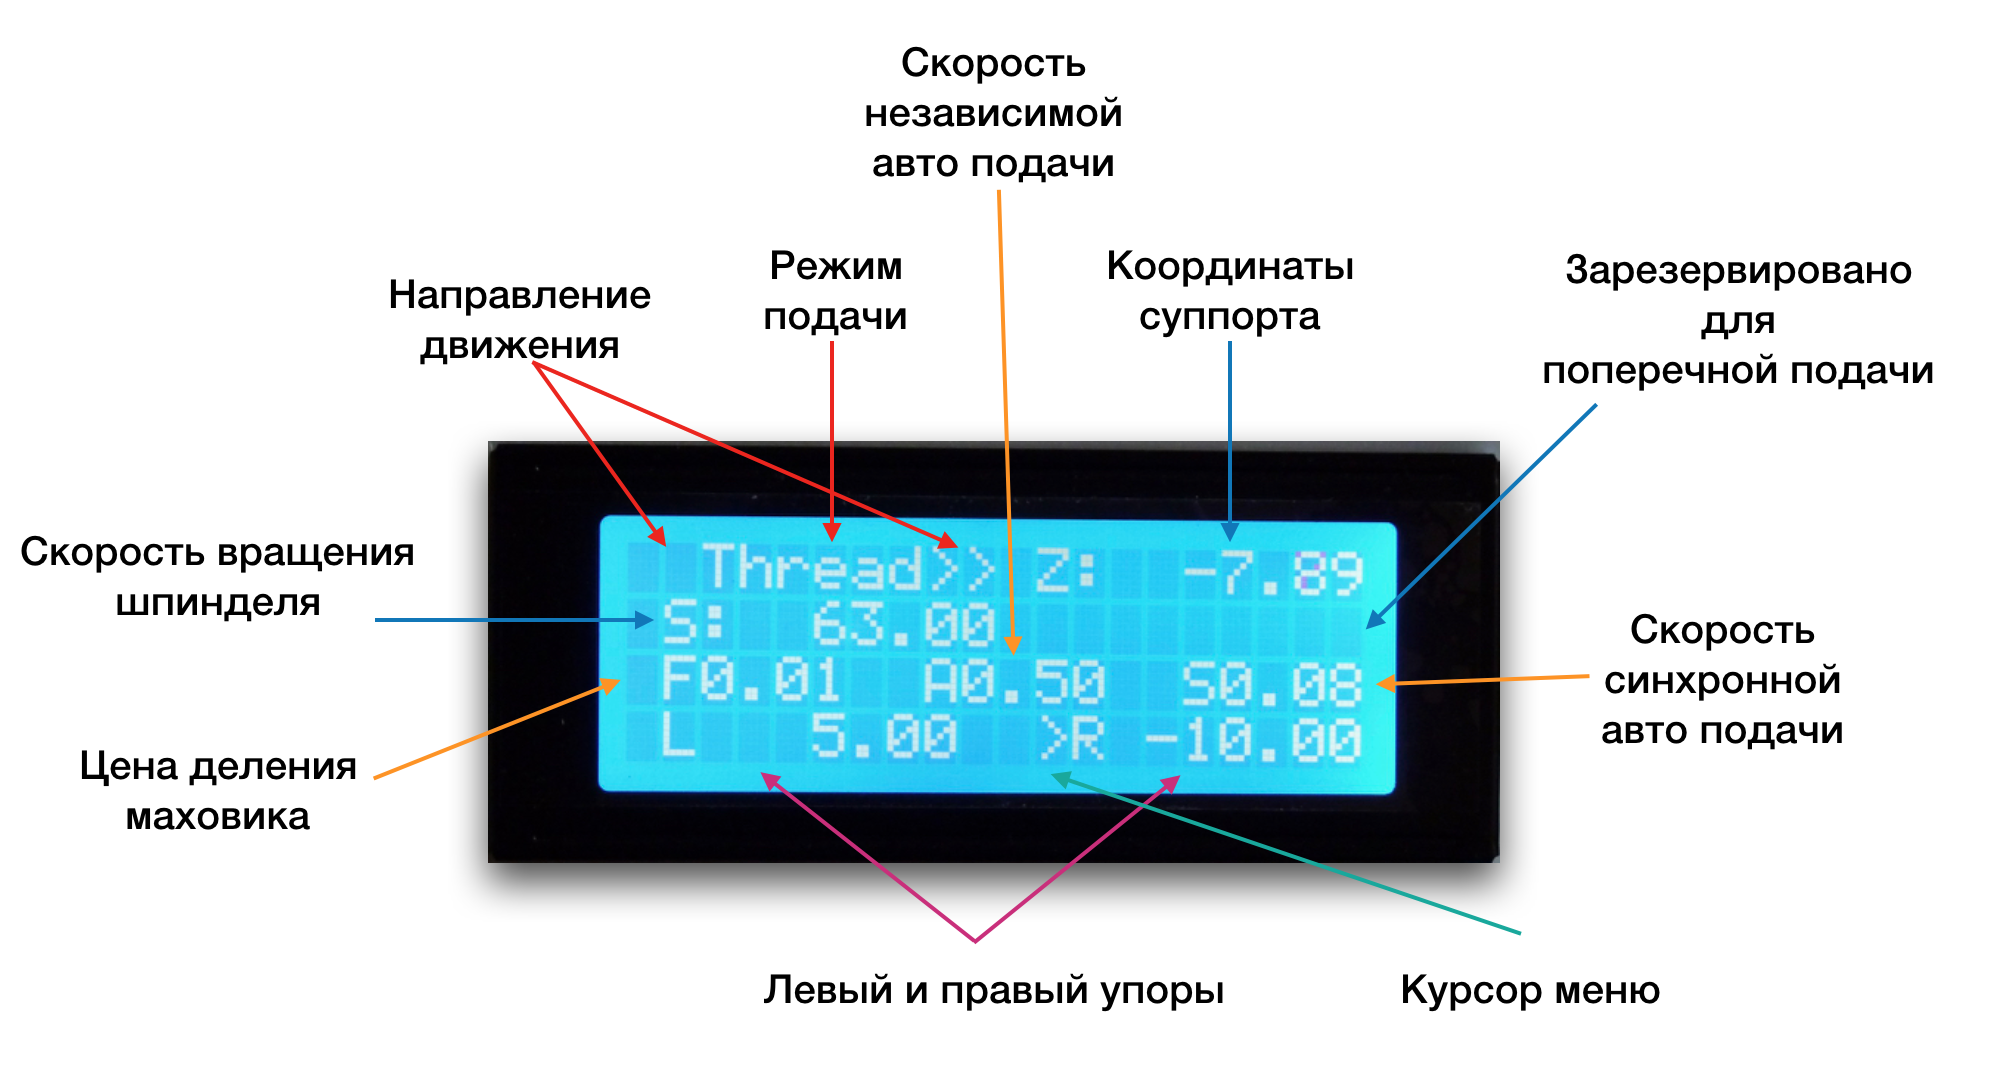 Display%20(ru).png?raw=true